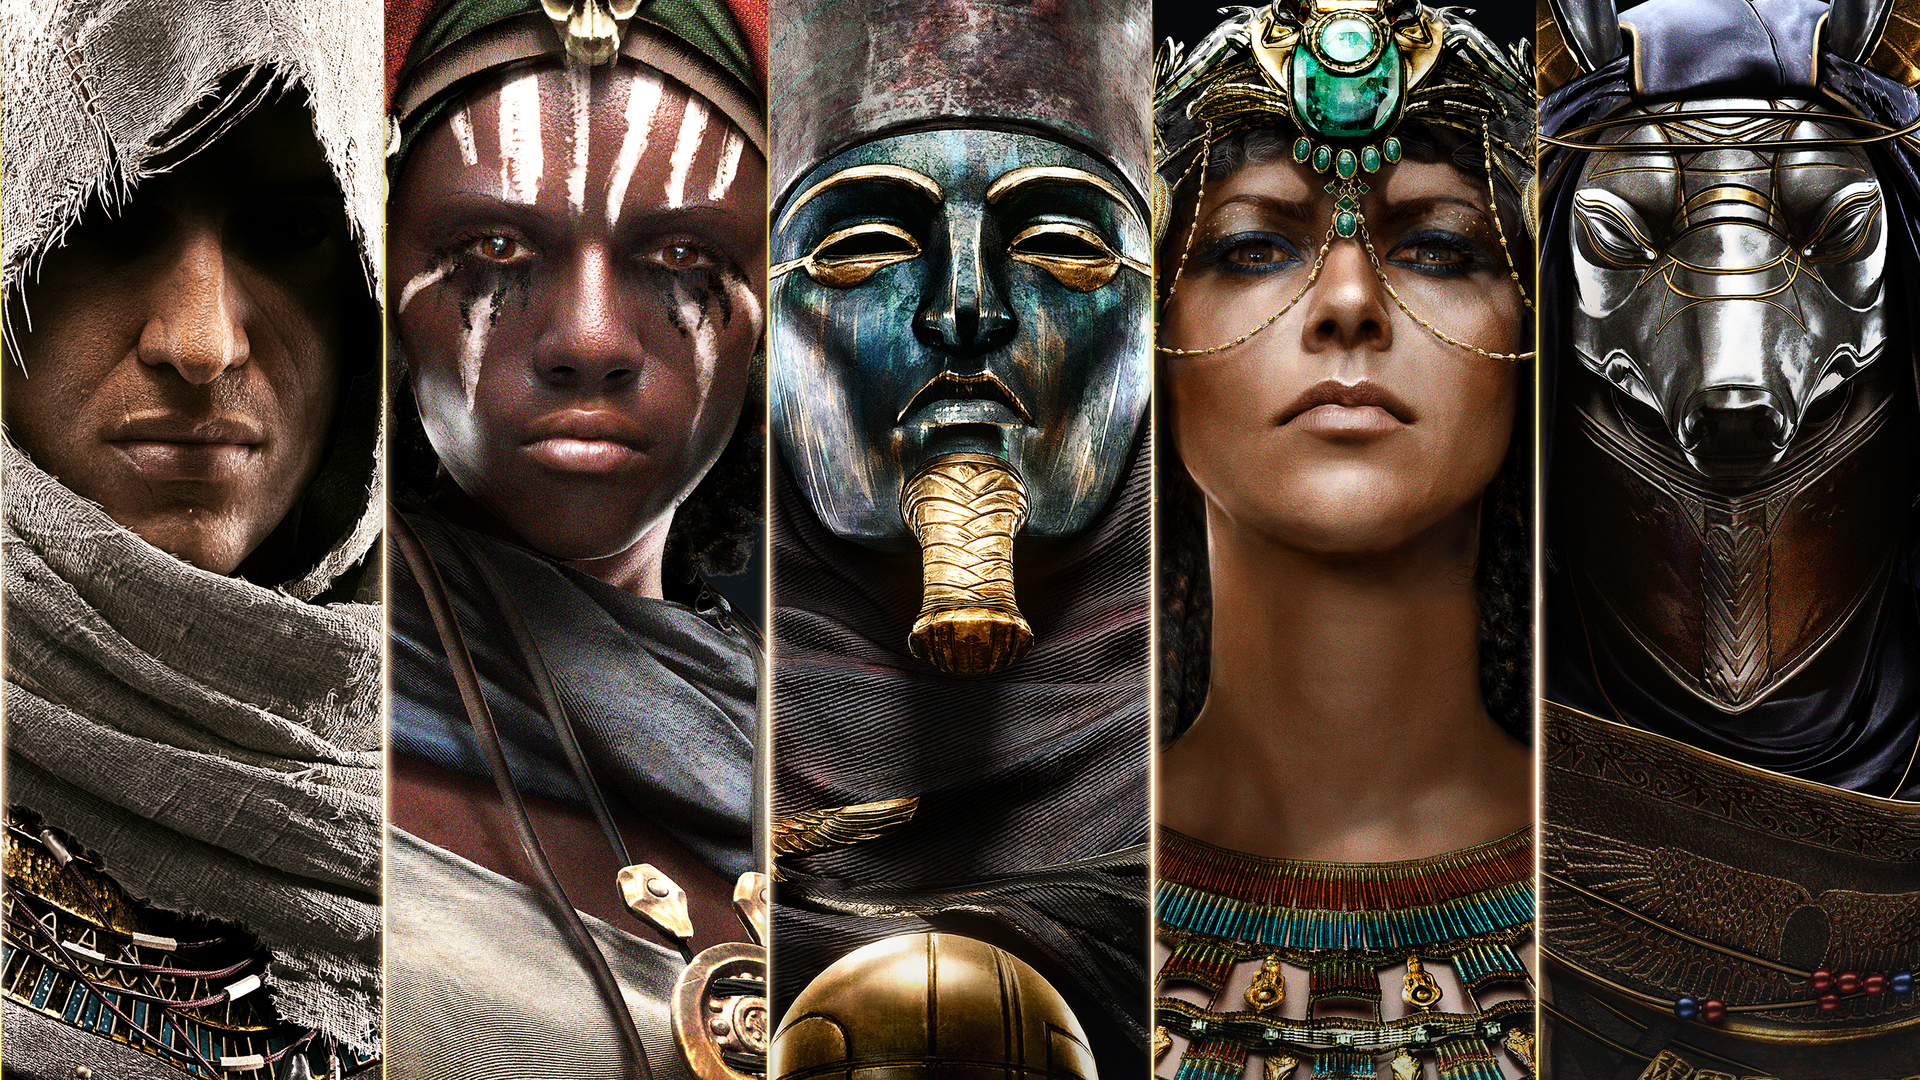 Cleopatra Art Assassins Creed Origins